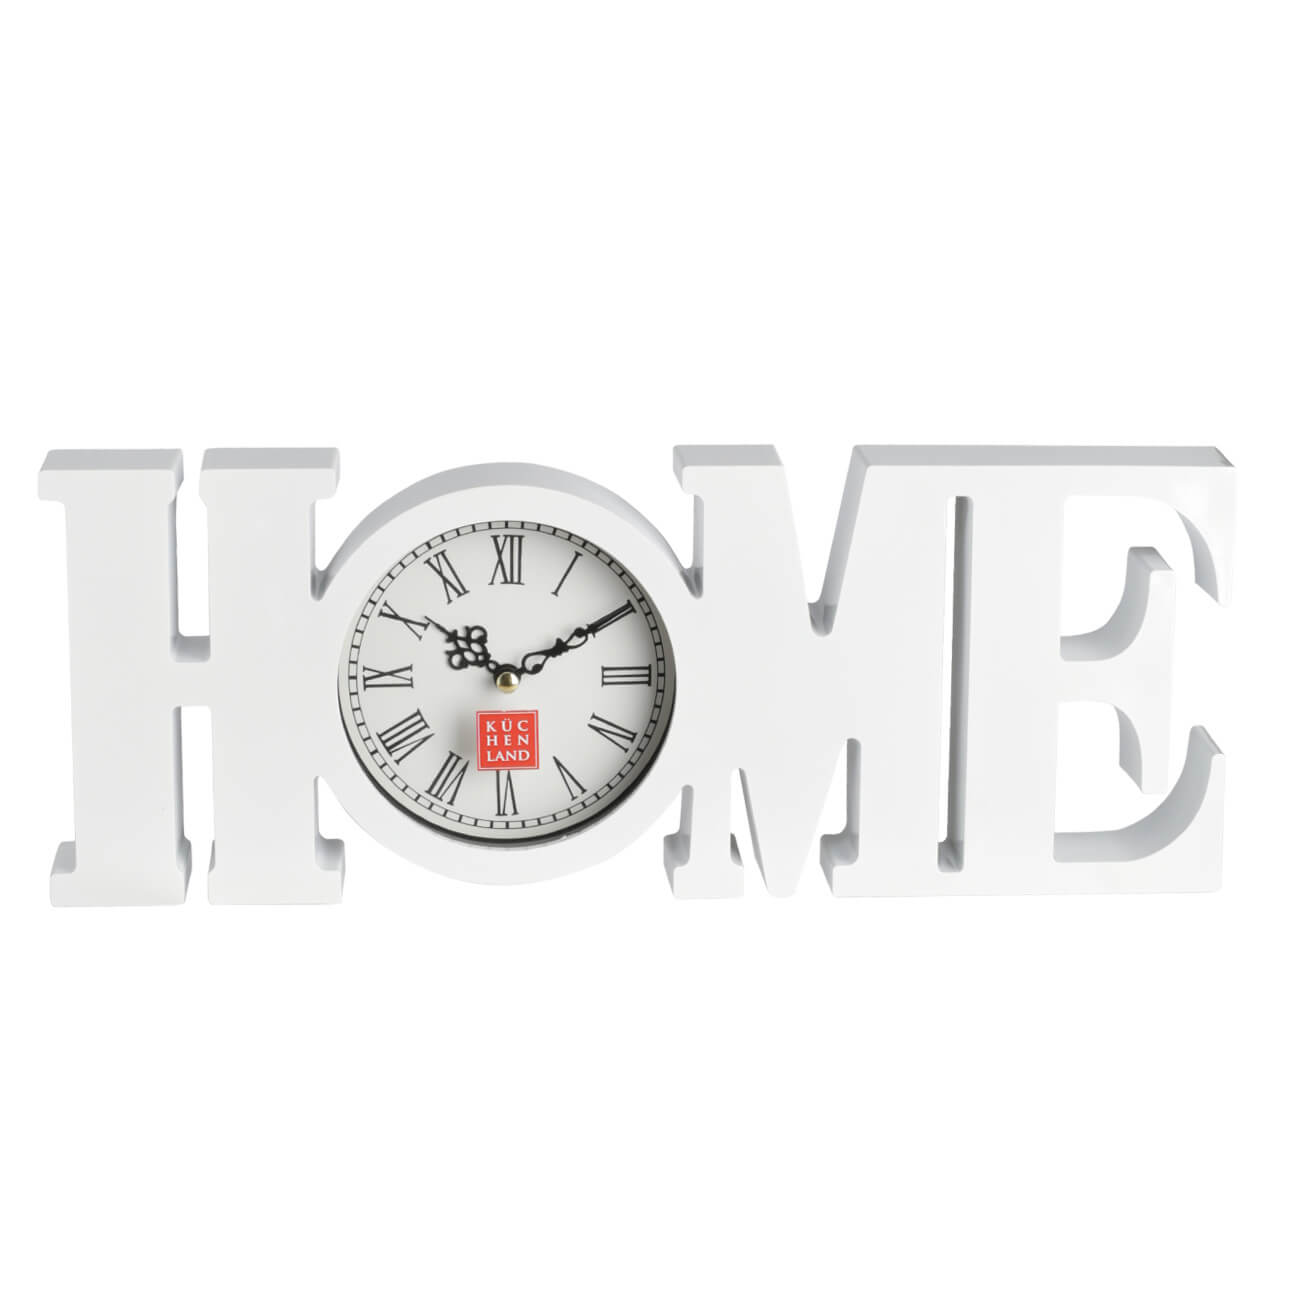 Часы настенные, 39х15 см, пластик/стекло, белые, Ноmе, Home deco настенные часы изящные черно белые 30x30 см